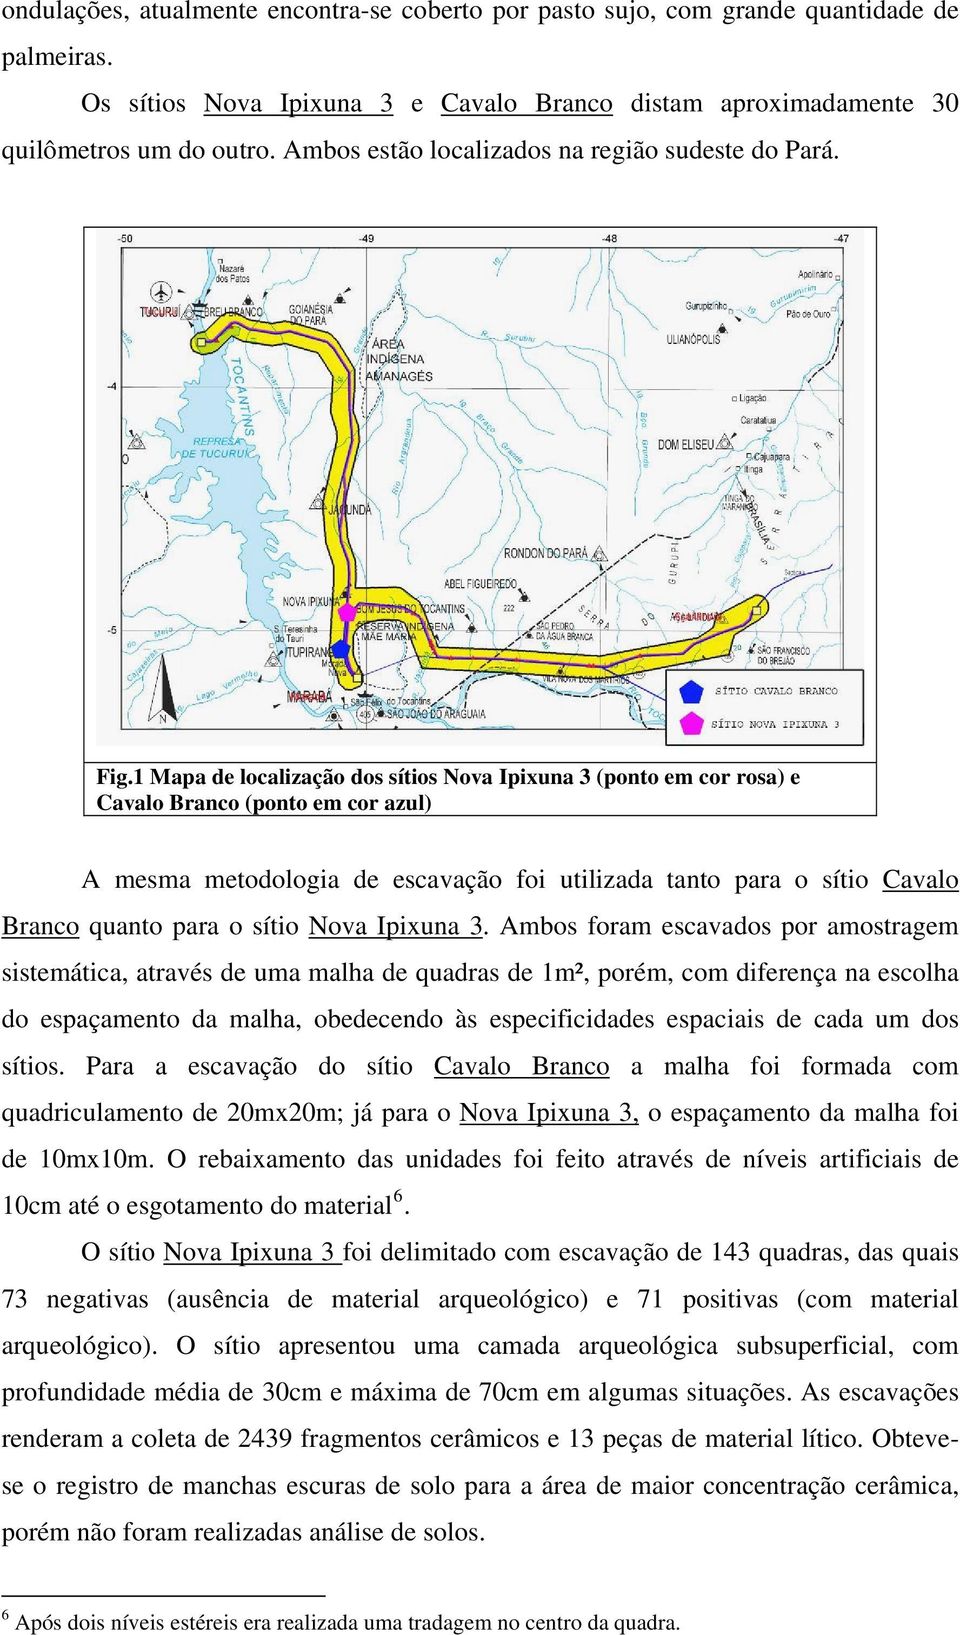 1 Mapa de localização dos sítios Nova Ipixuna 3 (ponto em cor rosa) e Cavalo Branco (ponto em cor azul) A mesma metodologia de escavação foi utilizada tanto para o sítio Cavalo Branco quanto para o